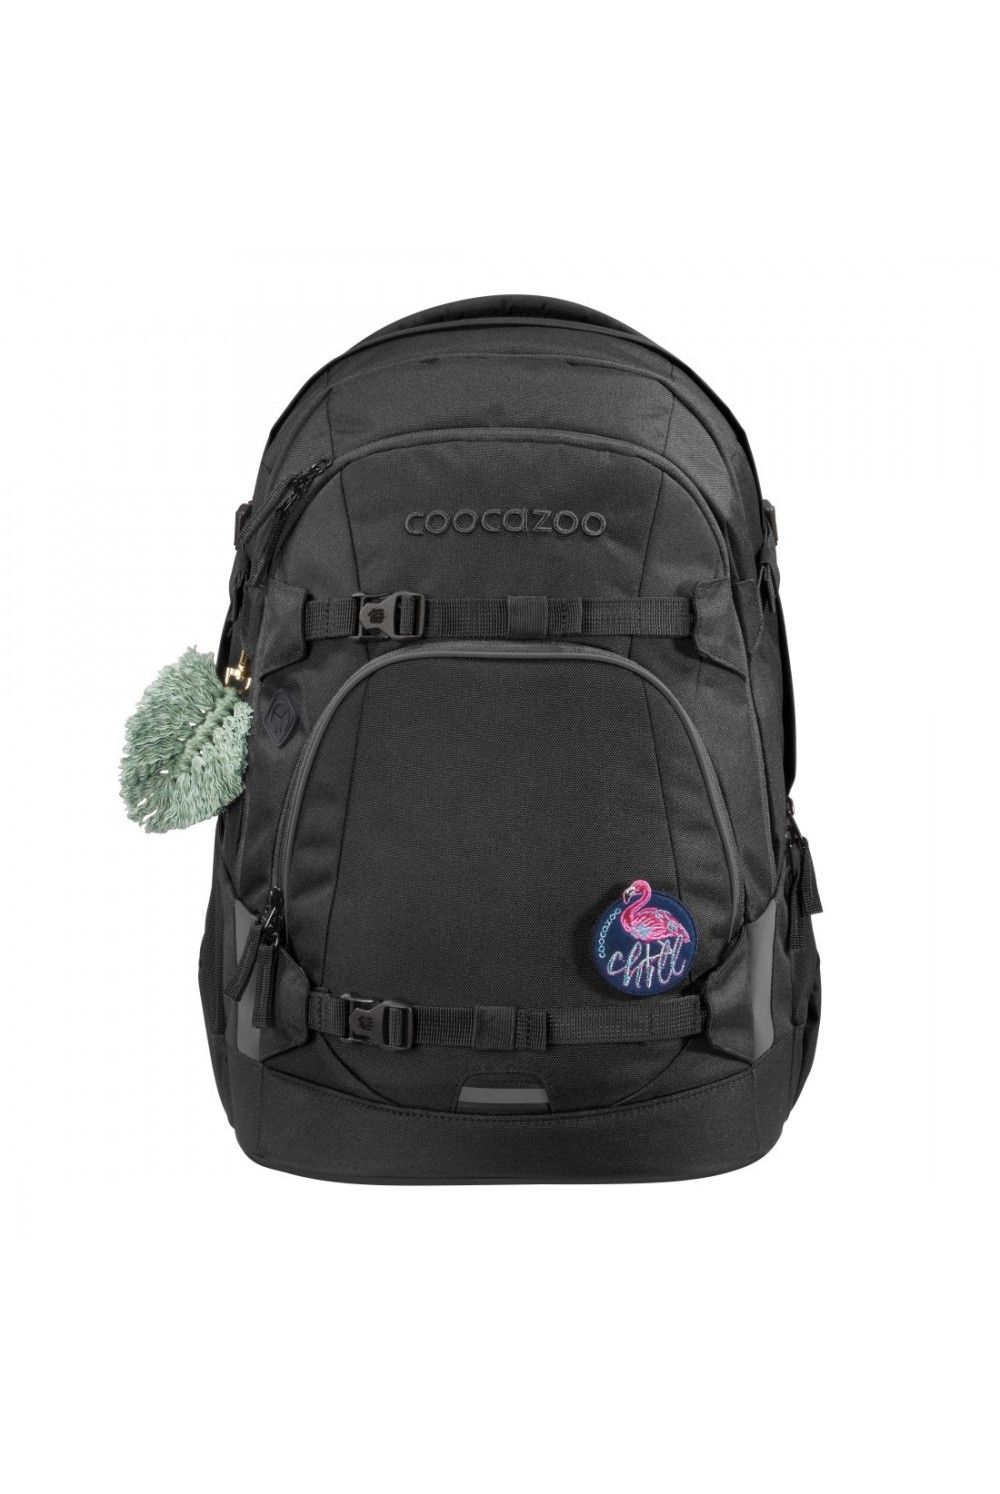 School backpack Coocazoo MATE Black Coal